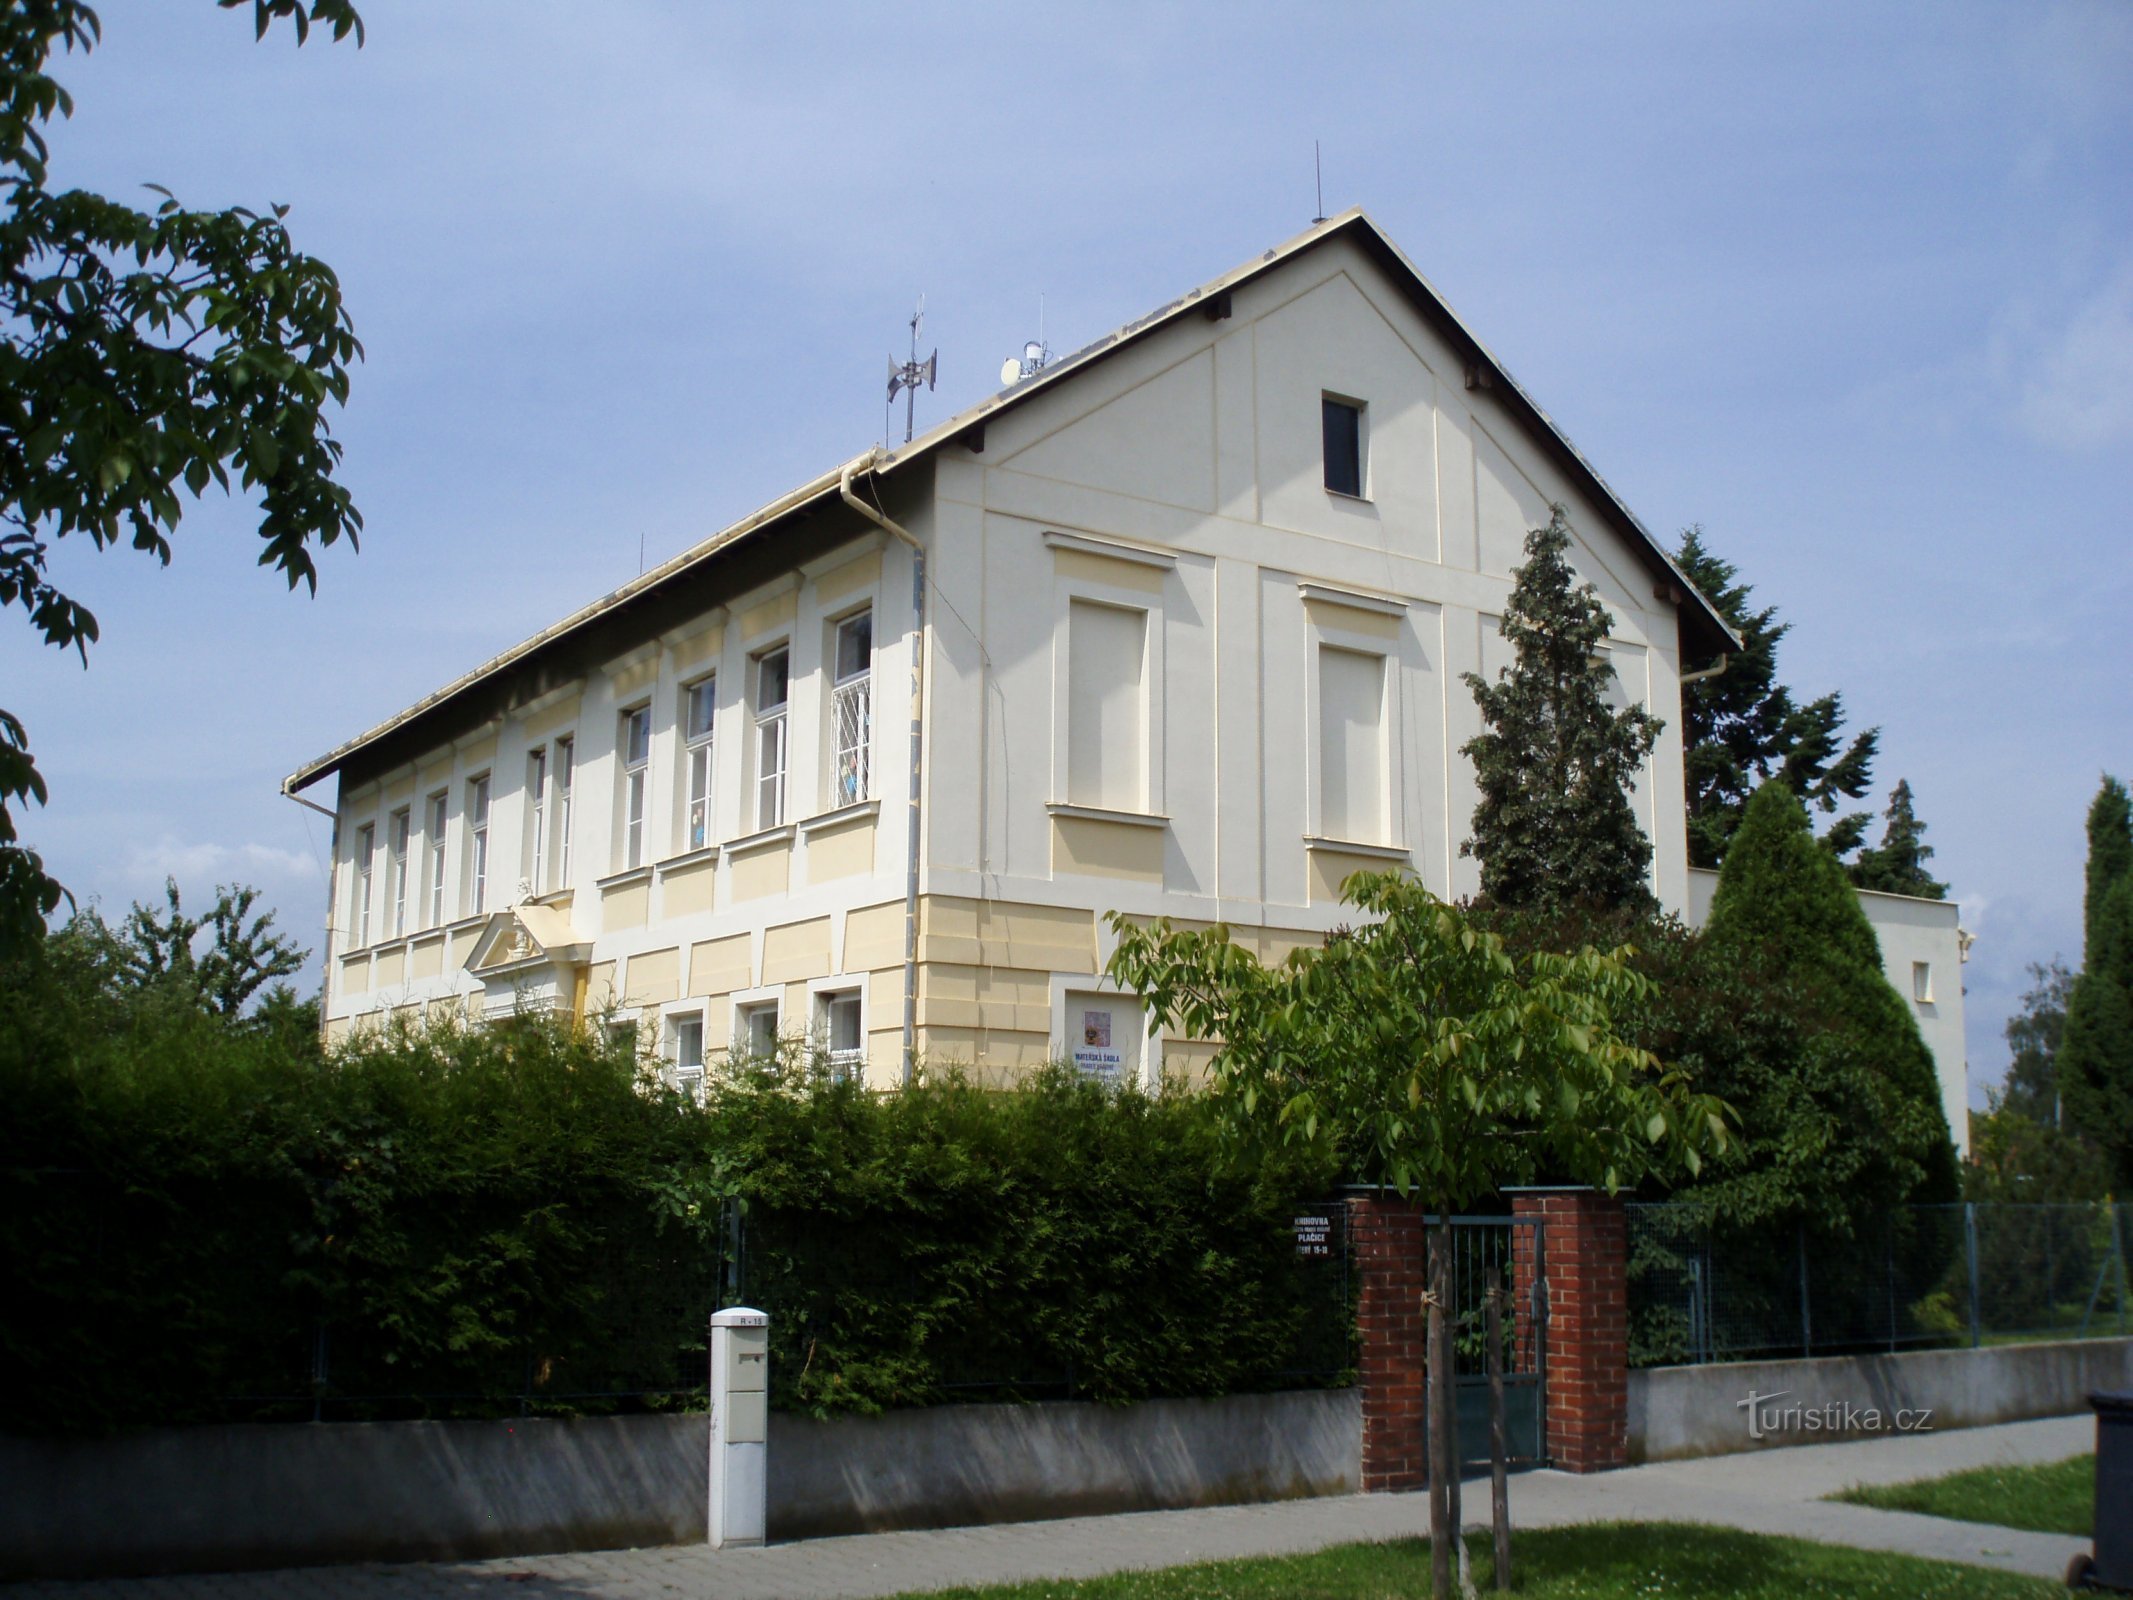 Plačice (Hradec Králové) 的幼儿园